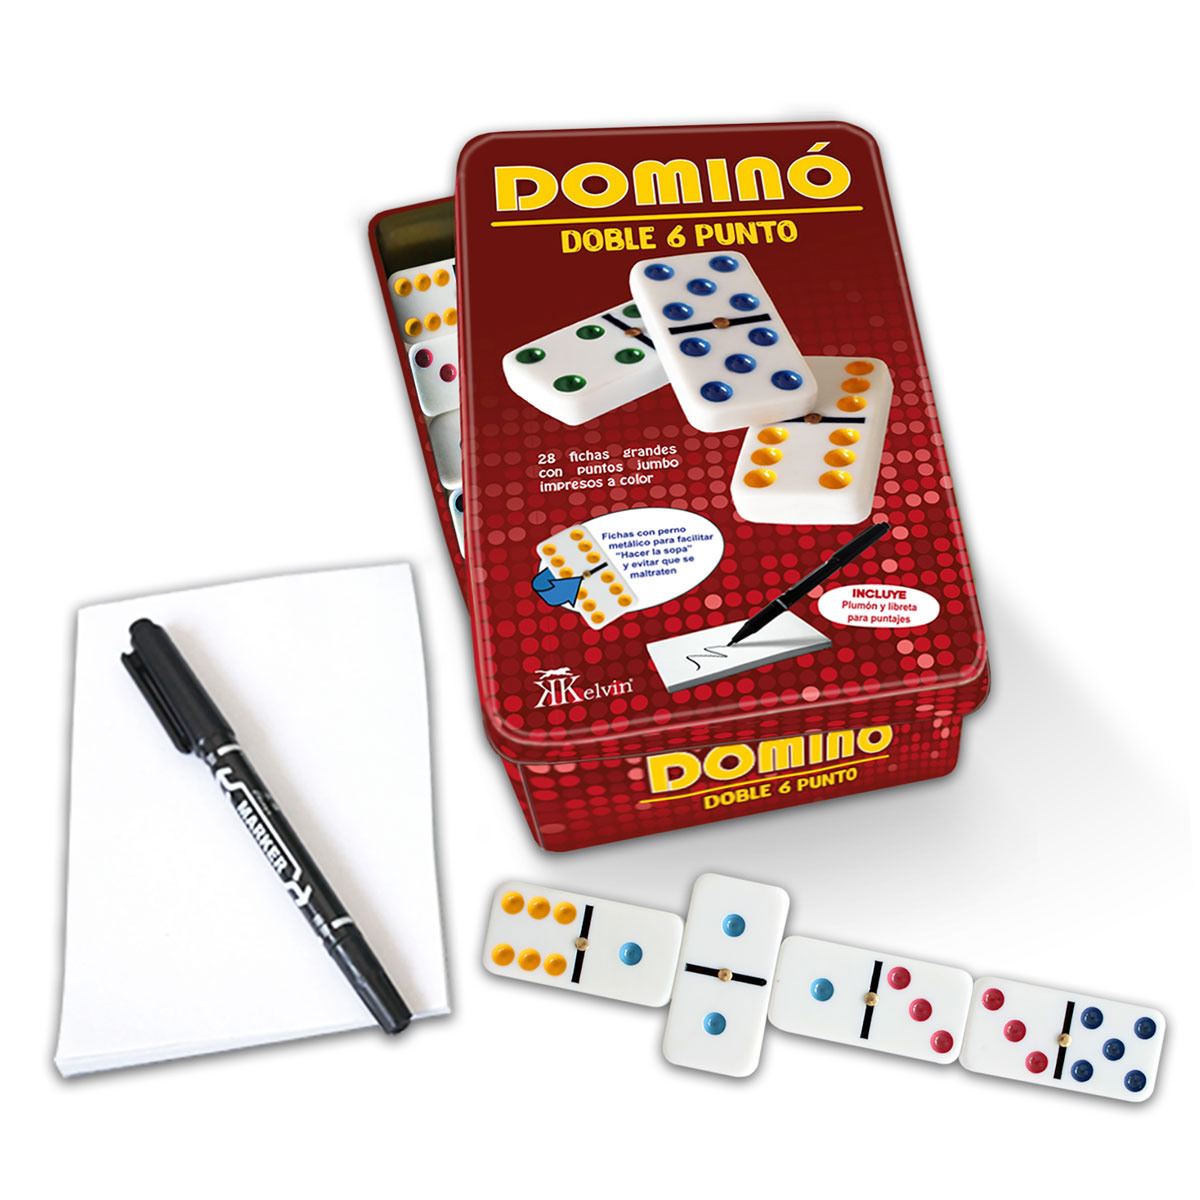 Domino Caja Metalica 28 Piezas Puntos De Colores